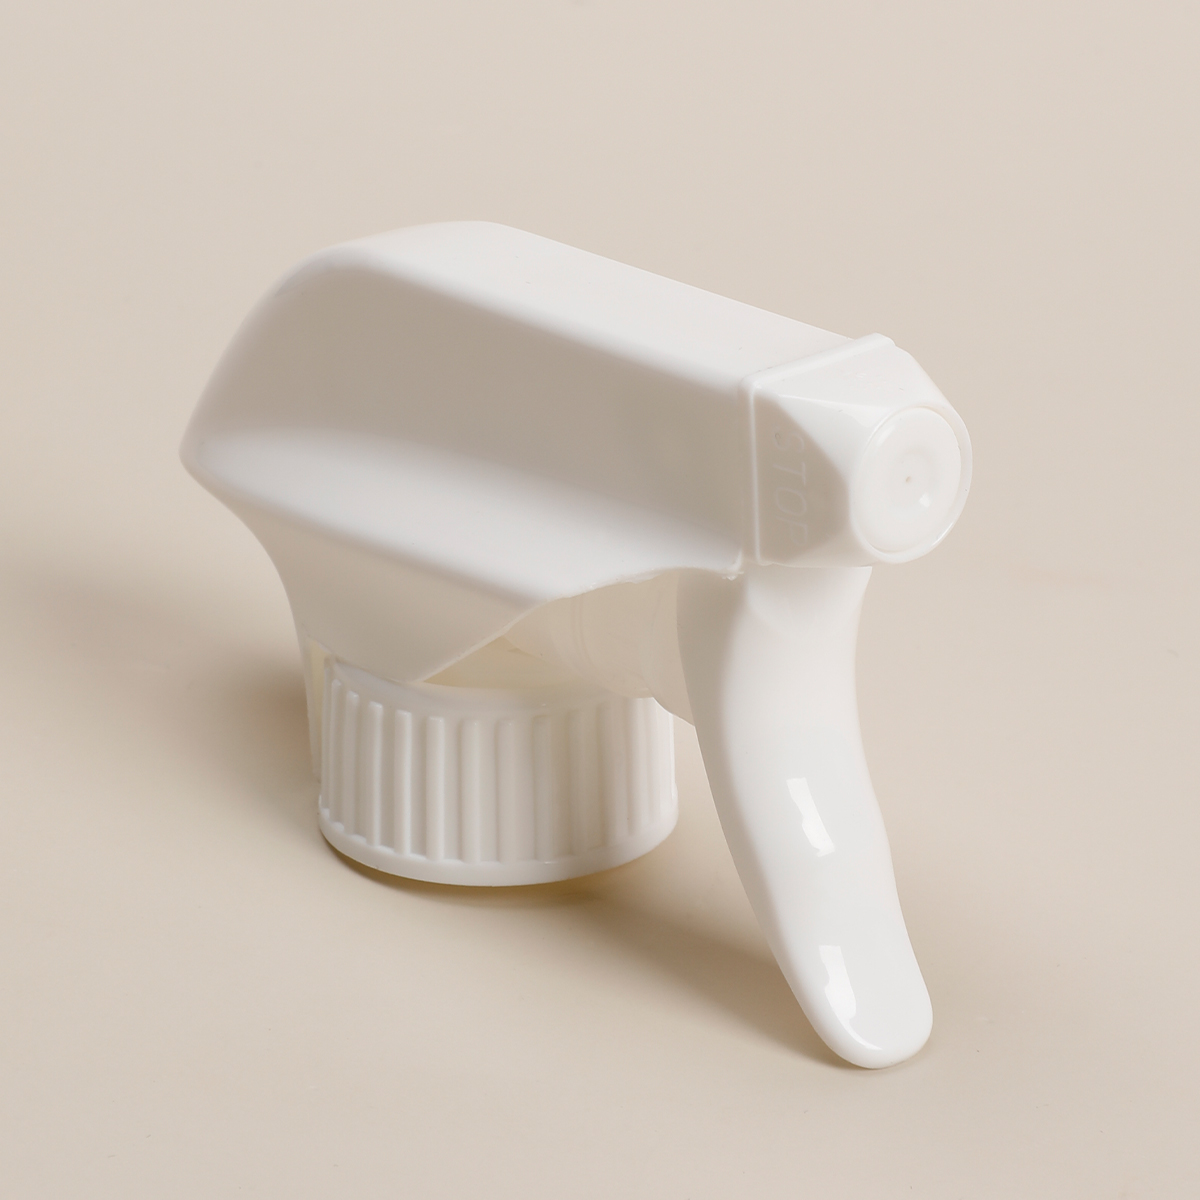 Fabricación de detergente con logotipo personalizado blanco 28/400 28/410 bomba pulverizadora de gatillo de plástico